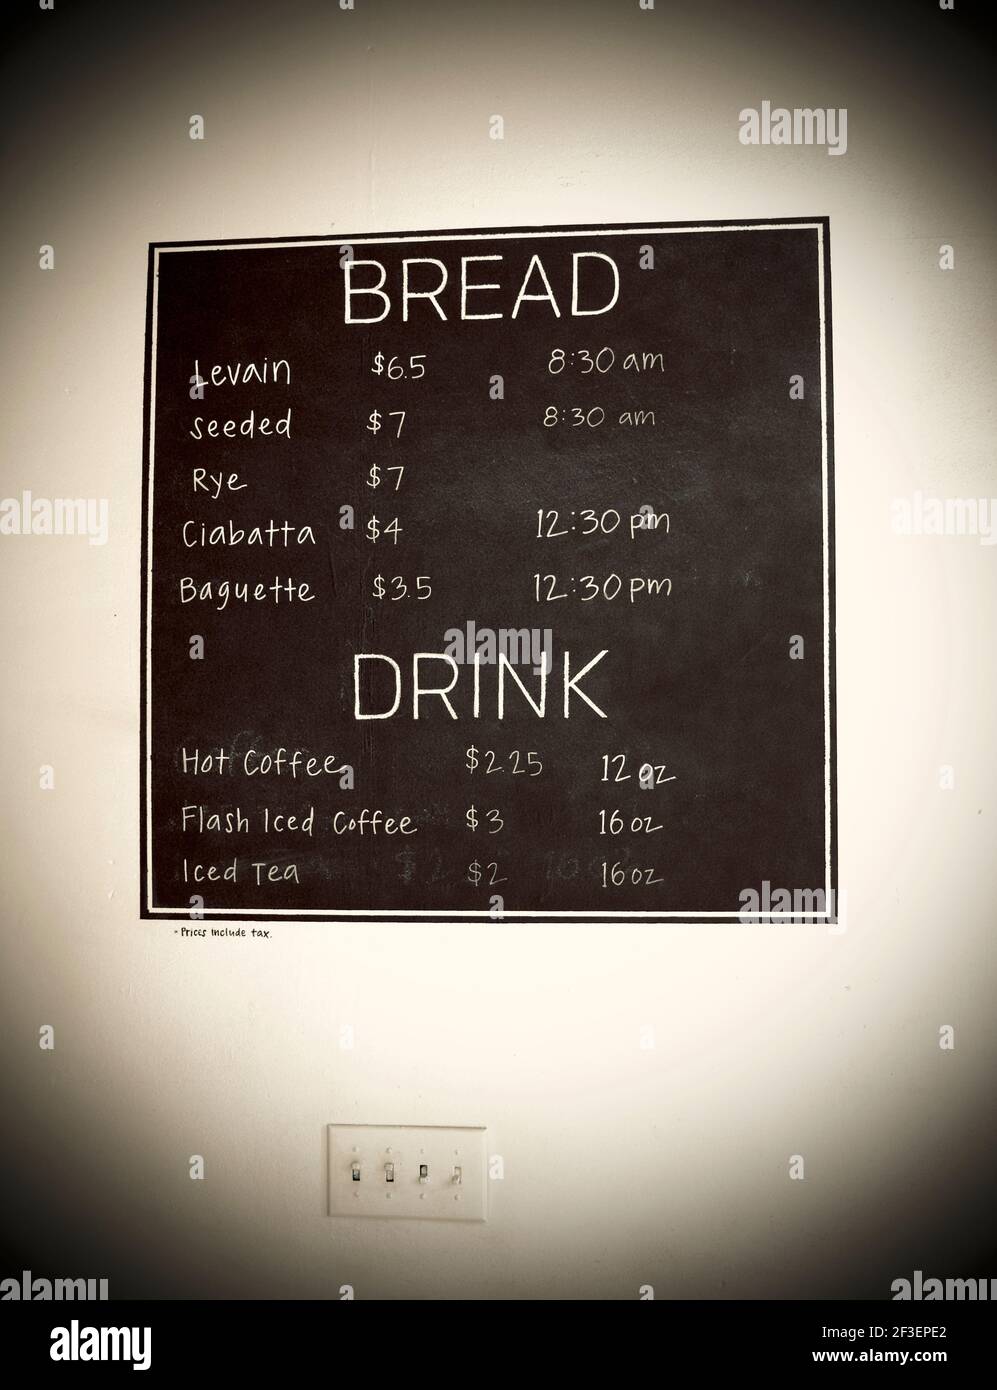 Handwerkliche Bäckerei mit Boulted Bread in Raleigh, North Carolina. Gegründet im August 2014 von Joshua Bellamy, Sam Kirkpatrick und Fulton Forde. Stockfoto